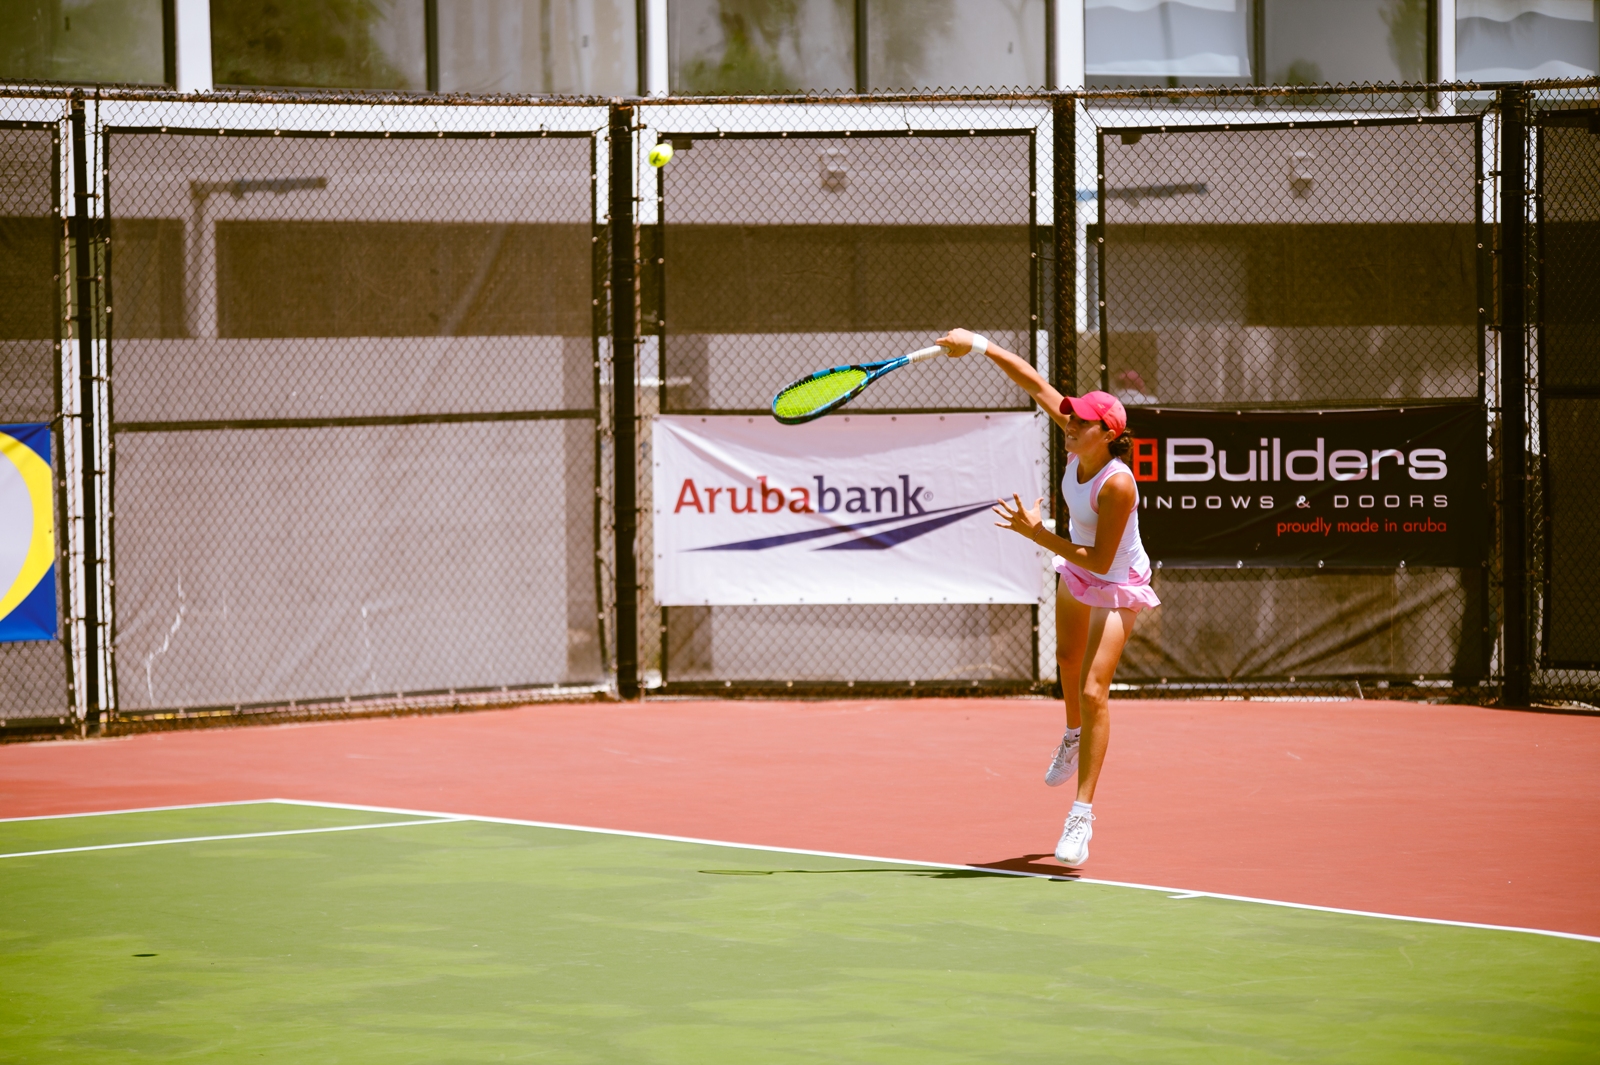 Aruba Bank tabata patrocinador di Torneo Internacional di Tenis Junior TIHTA